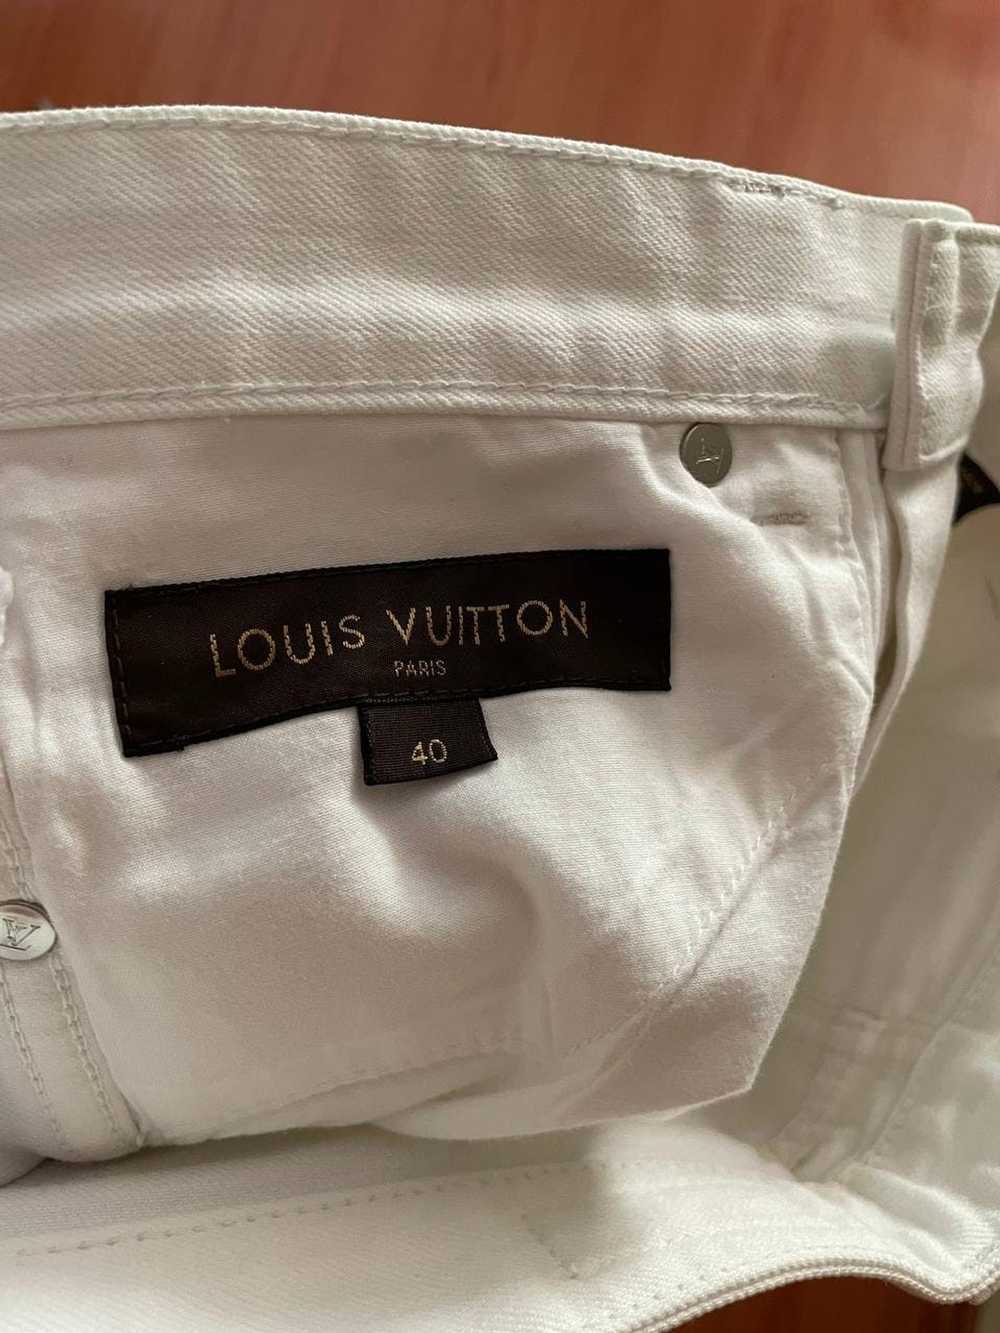 Louis Vuitton Louis Vuitton Jeans - image 7